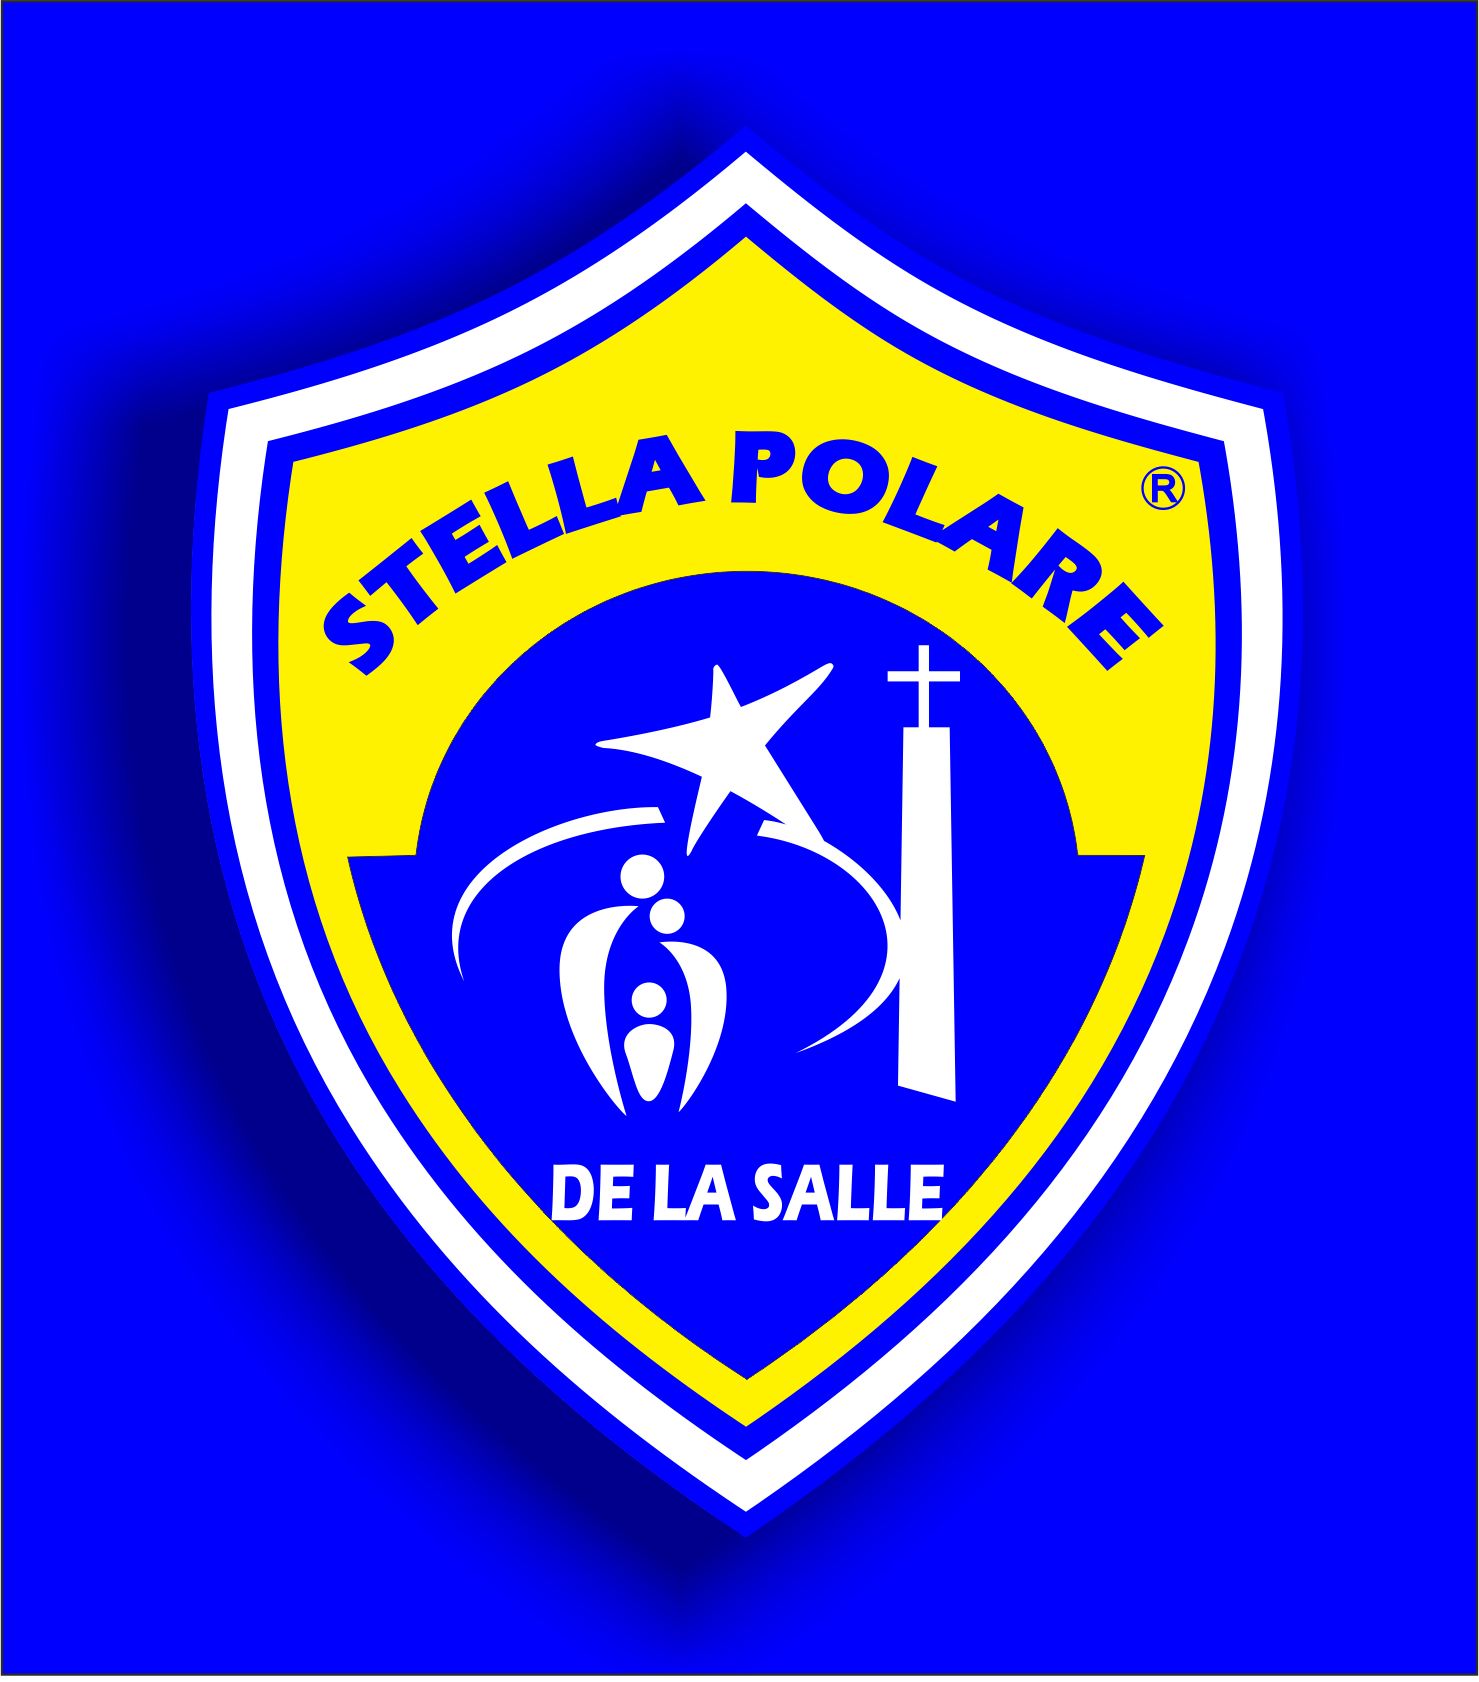 STELLA POLARE DE LA SALLE